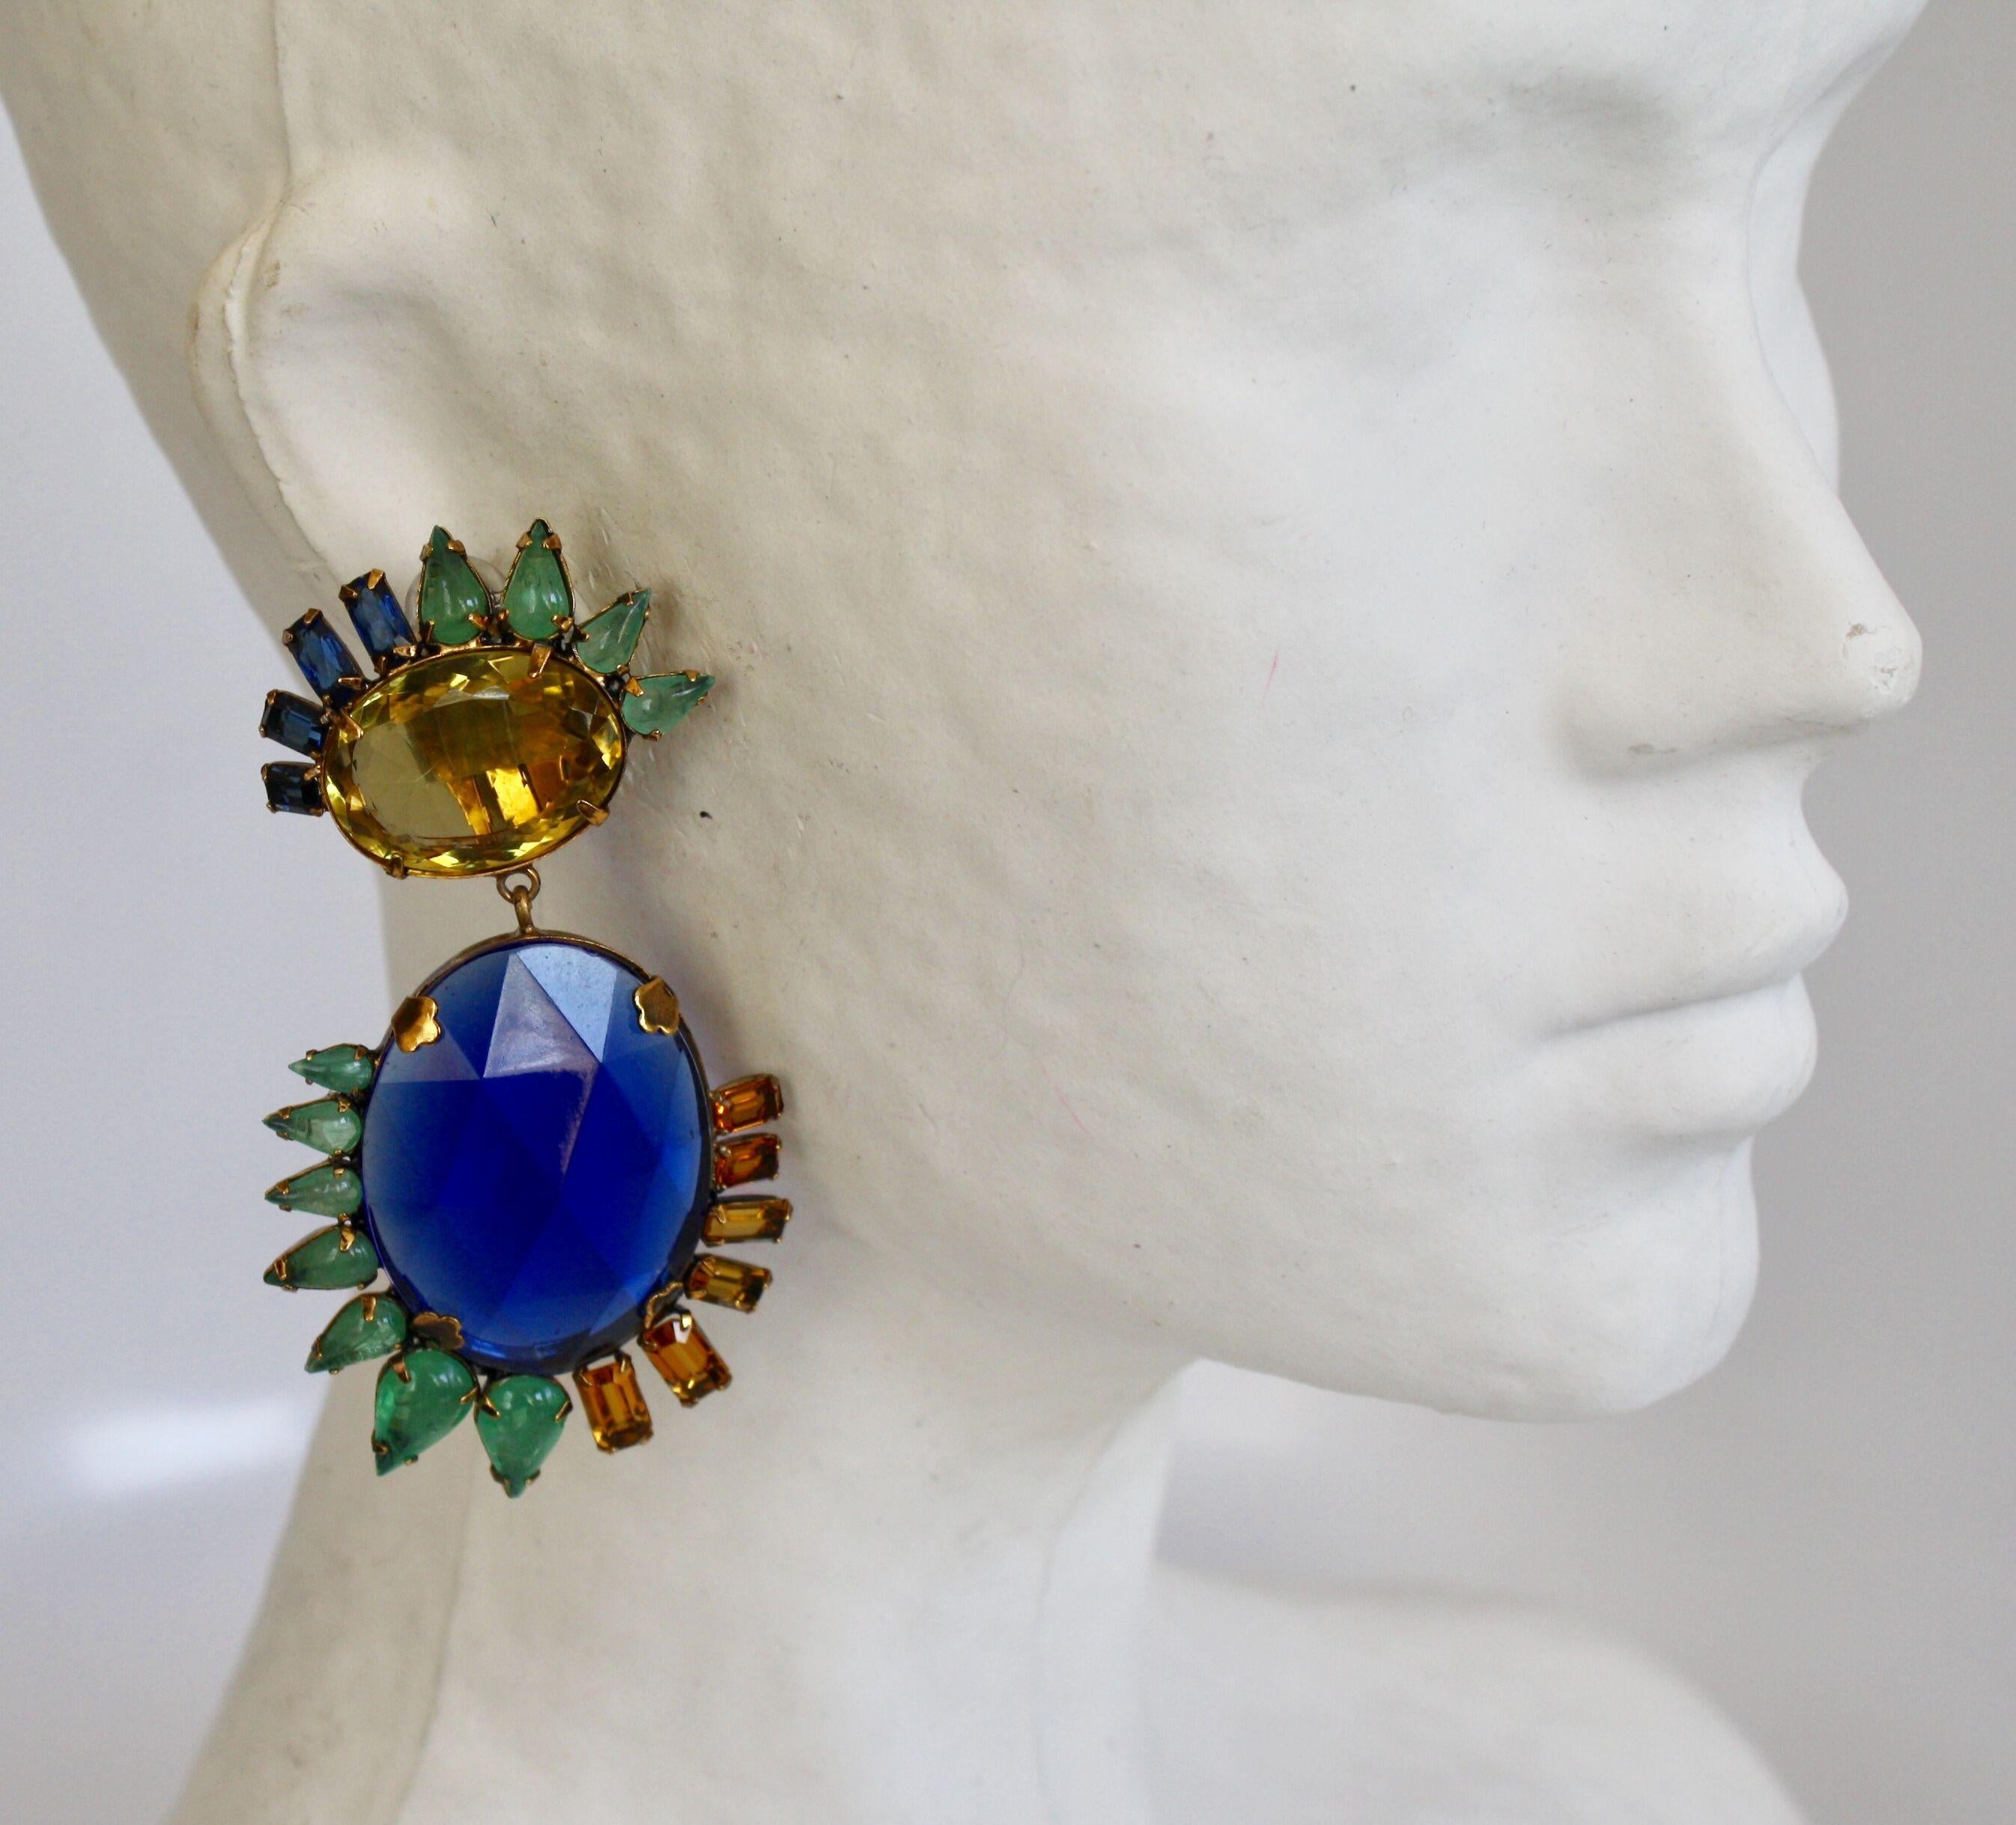 Lemon quartz top and vintage sapphire base clip earrings from designer Iradj Moini. 